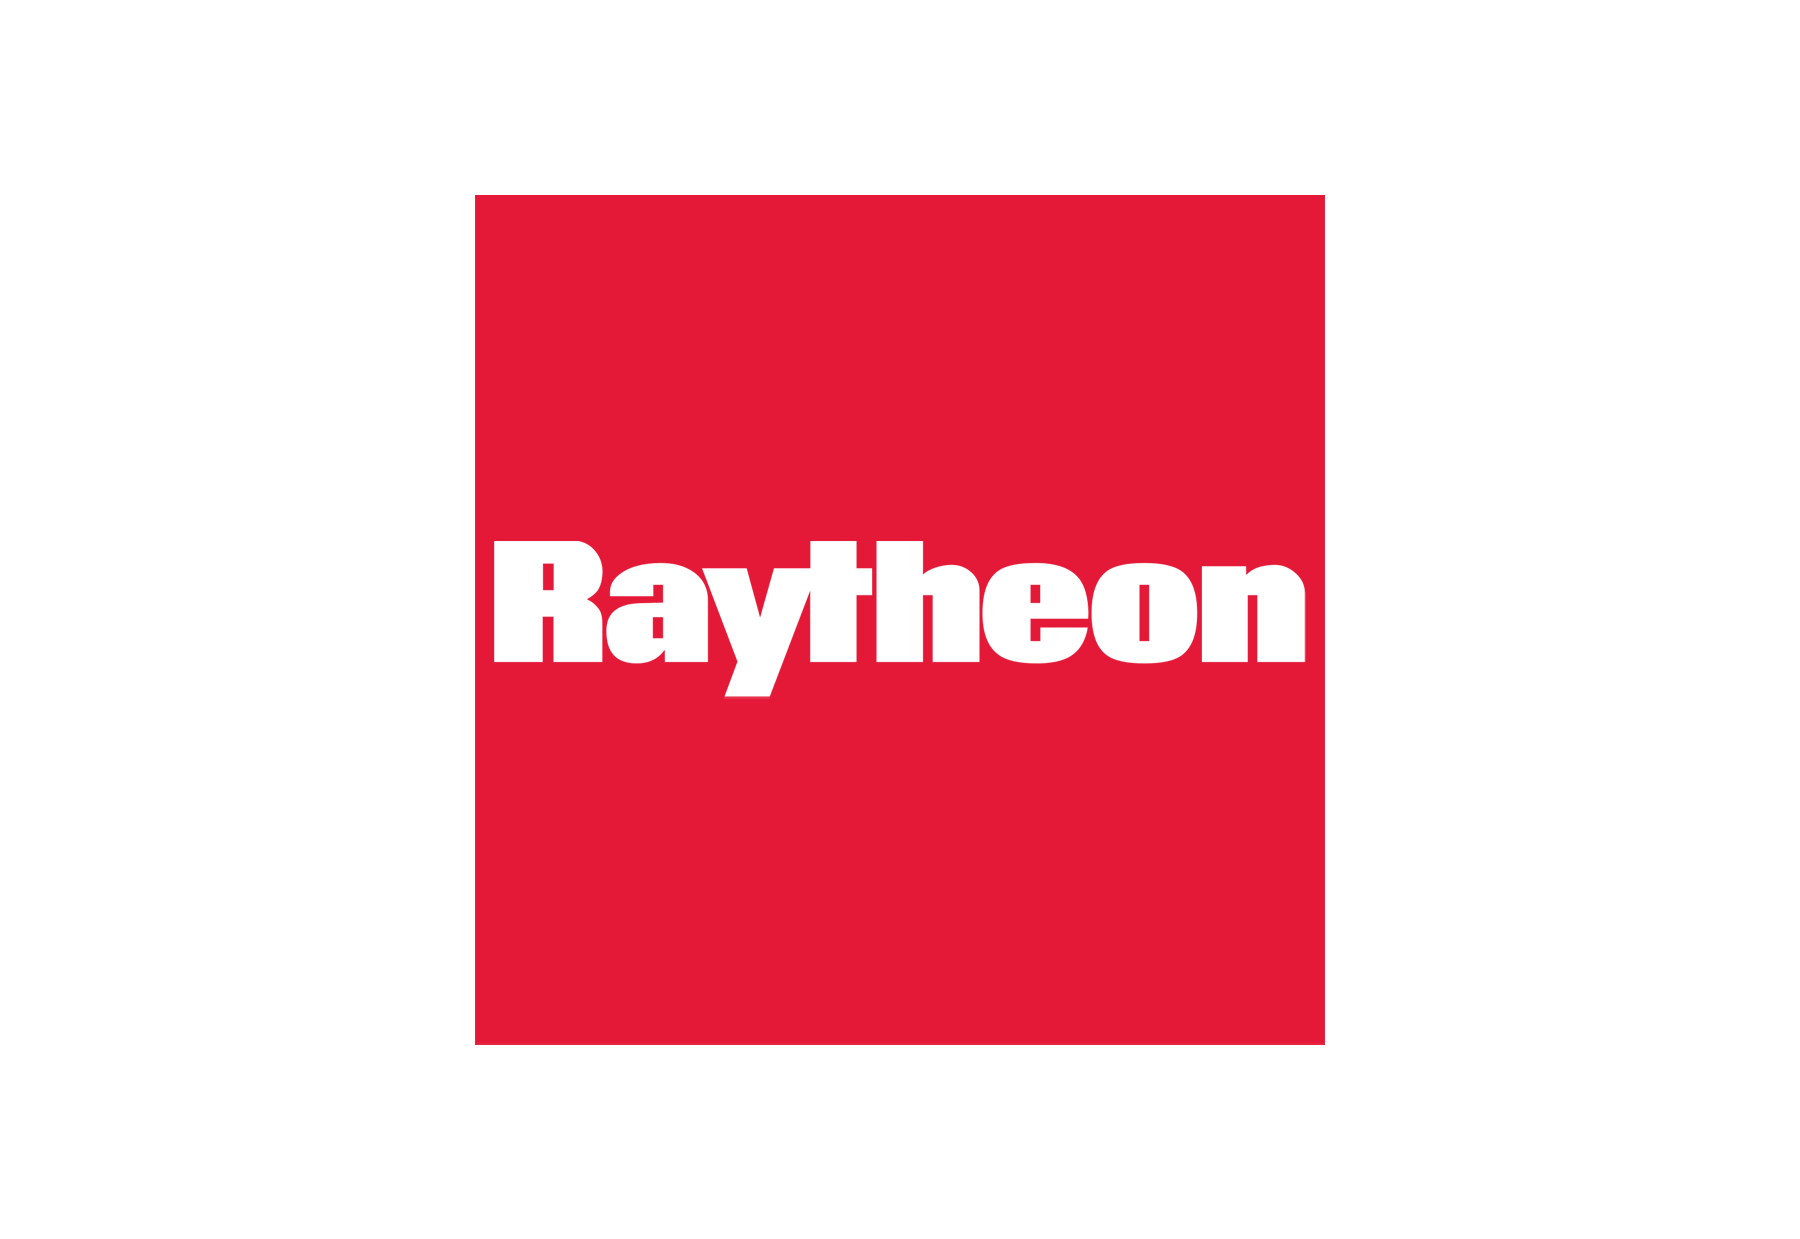 Raytheon Logo - Raytheon logo